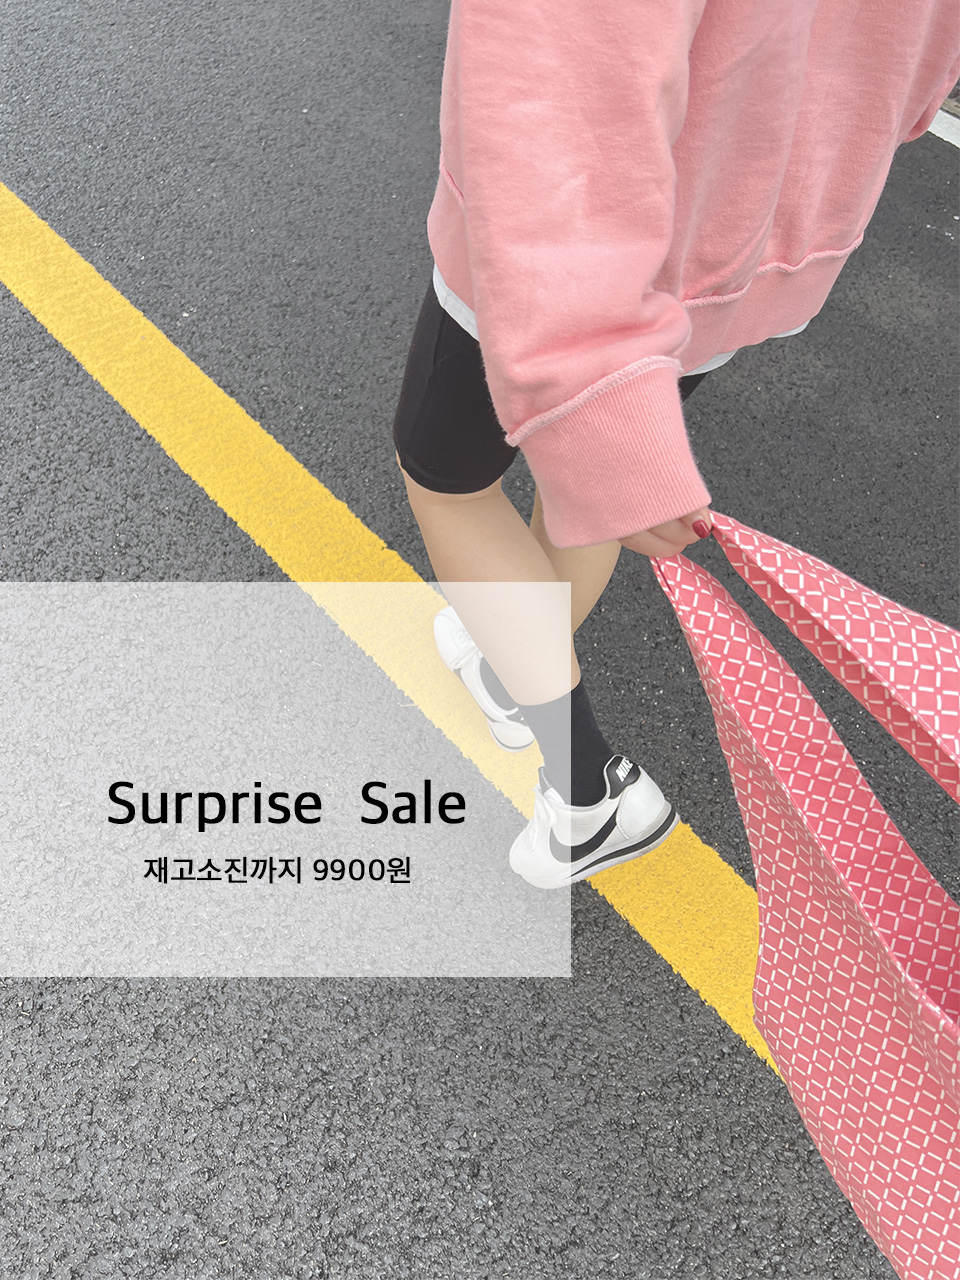 9900 surprise sale   더히에코백